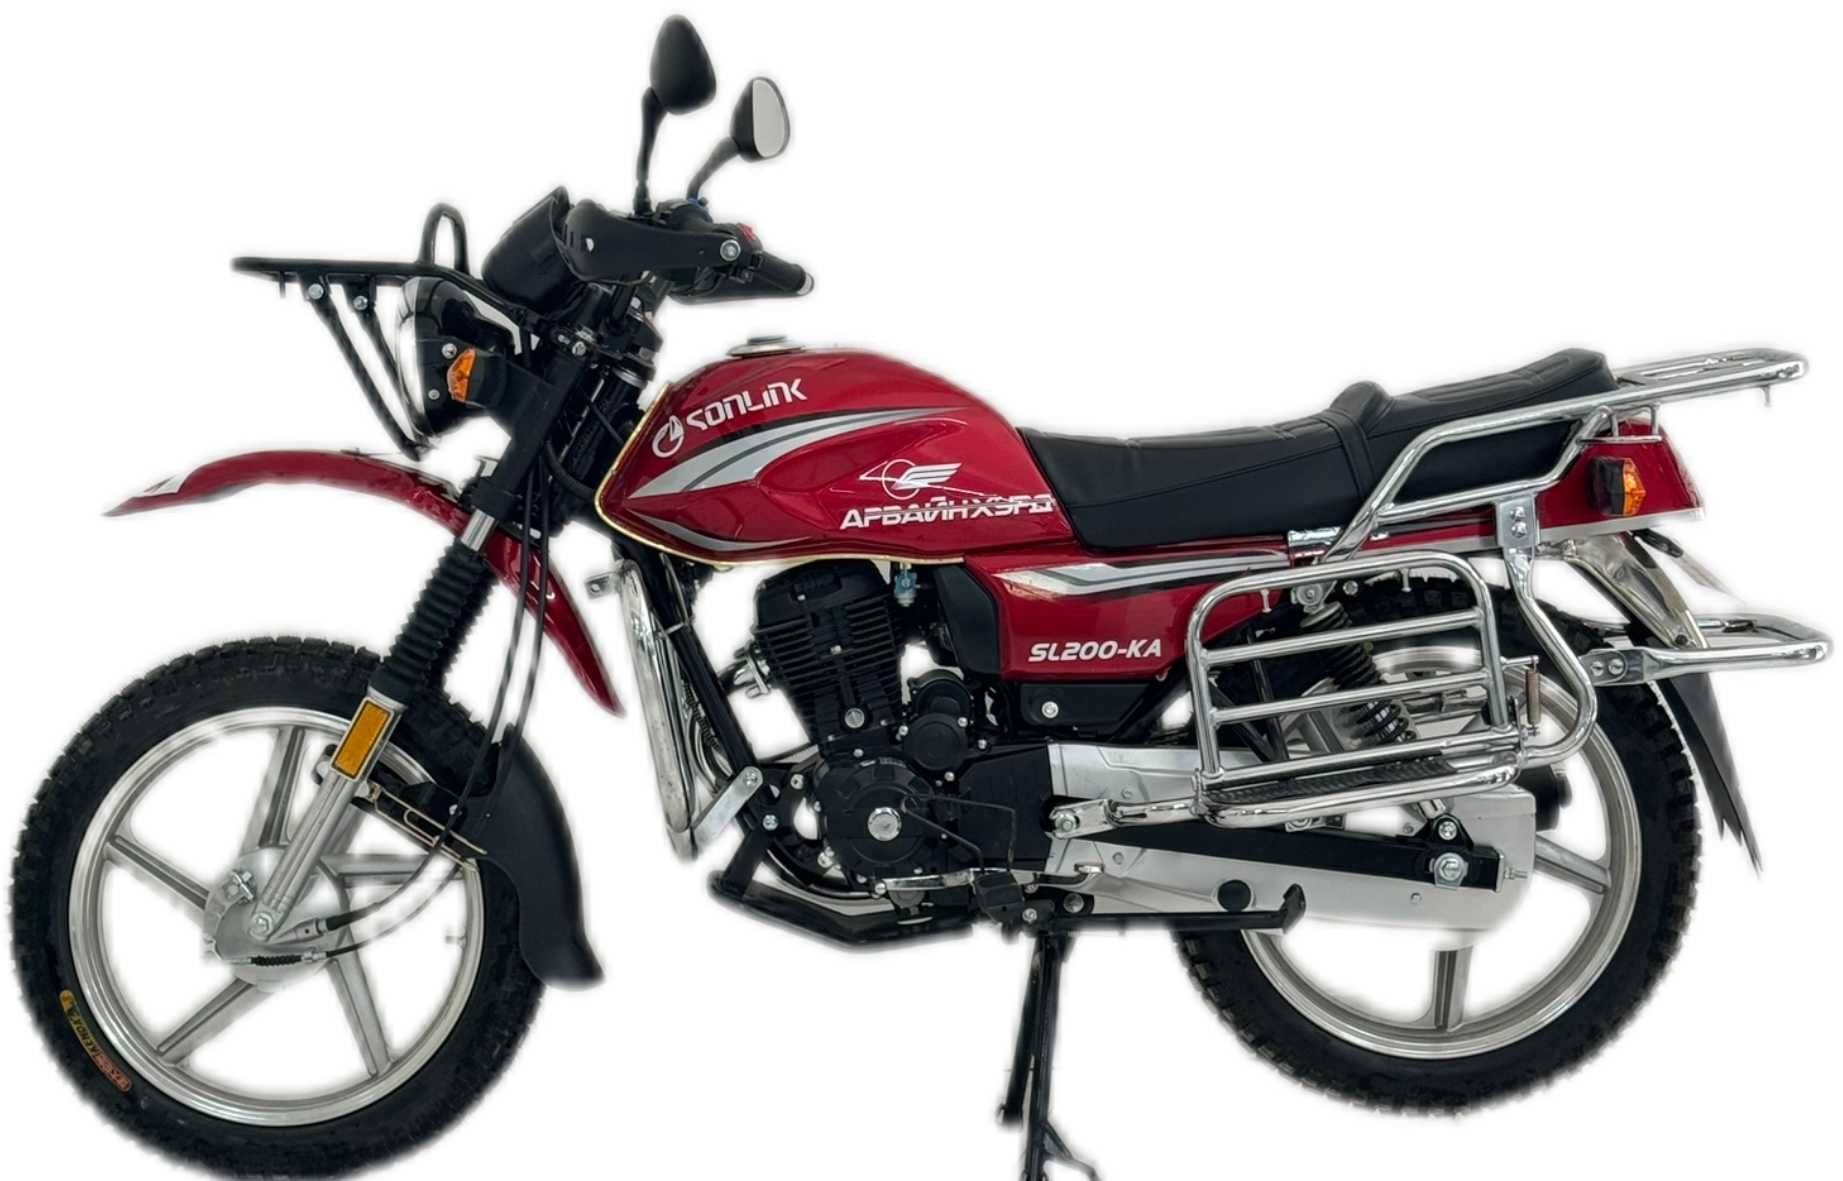 Sonlink Motorbike 200CC; Мотоцикл Sonlink 200 кубовый; ОРИГИНАЛ